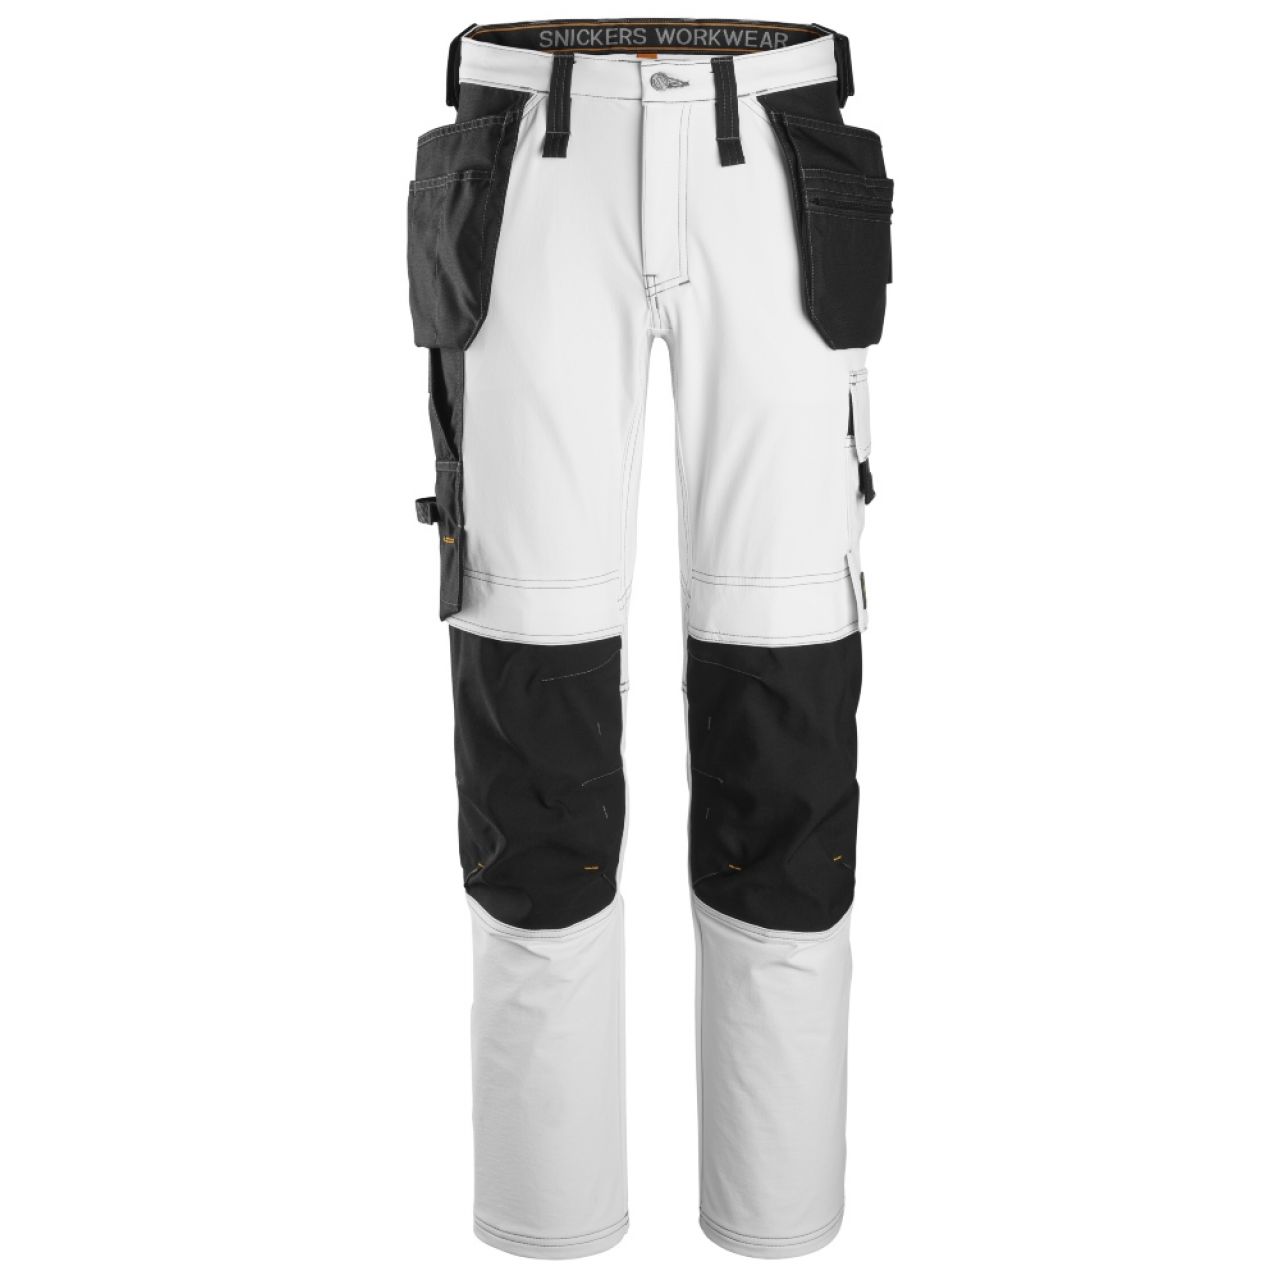 6271 Pantalones largos de trabajo elásticos completos con bolsillos flotantes AllroundWork blanco-negro talla 96